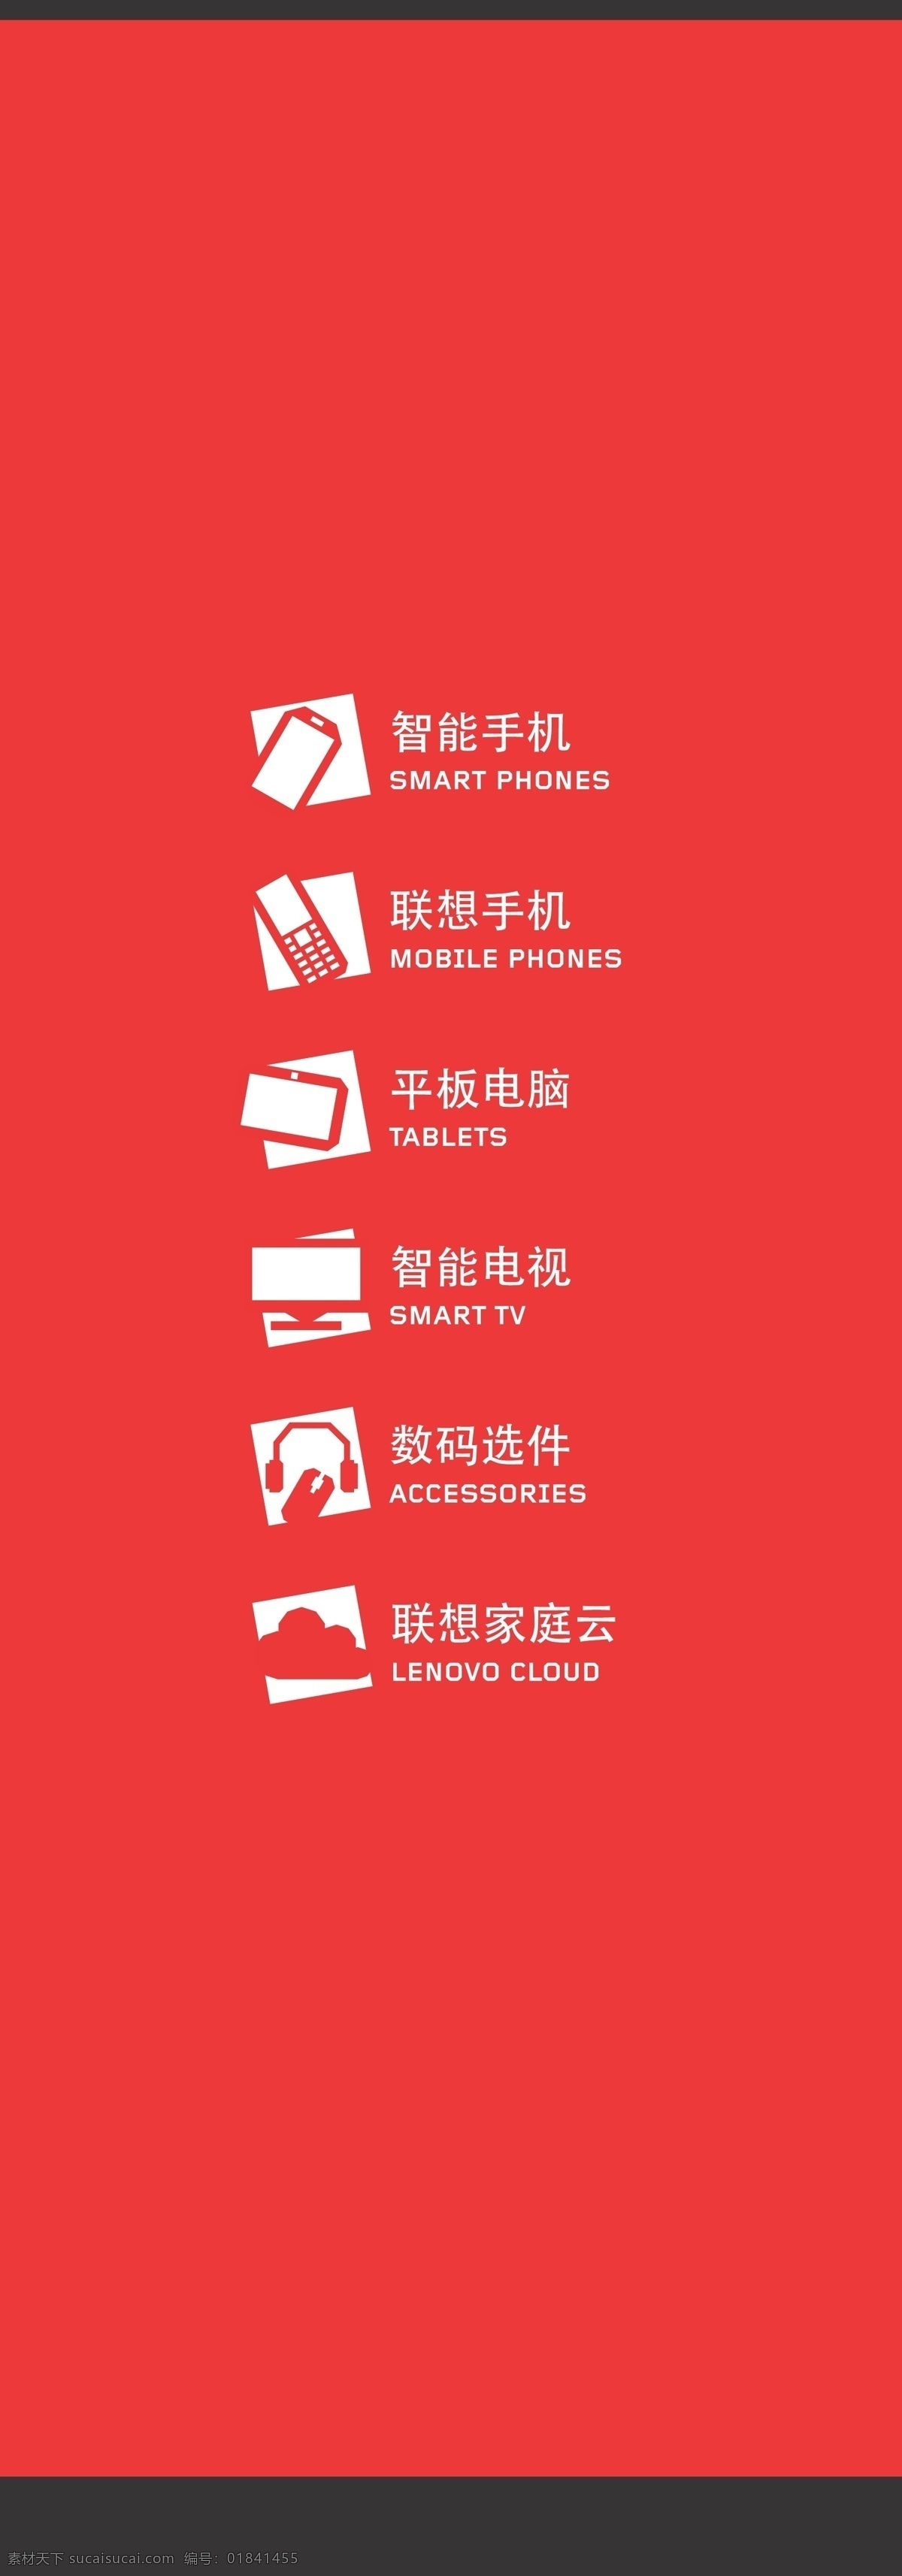 lenovo 玻璃幕墙 联想 图标 中文 中文模板下载 中文矢量素材 中文版 矢量